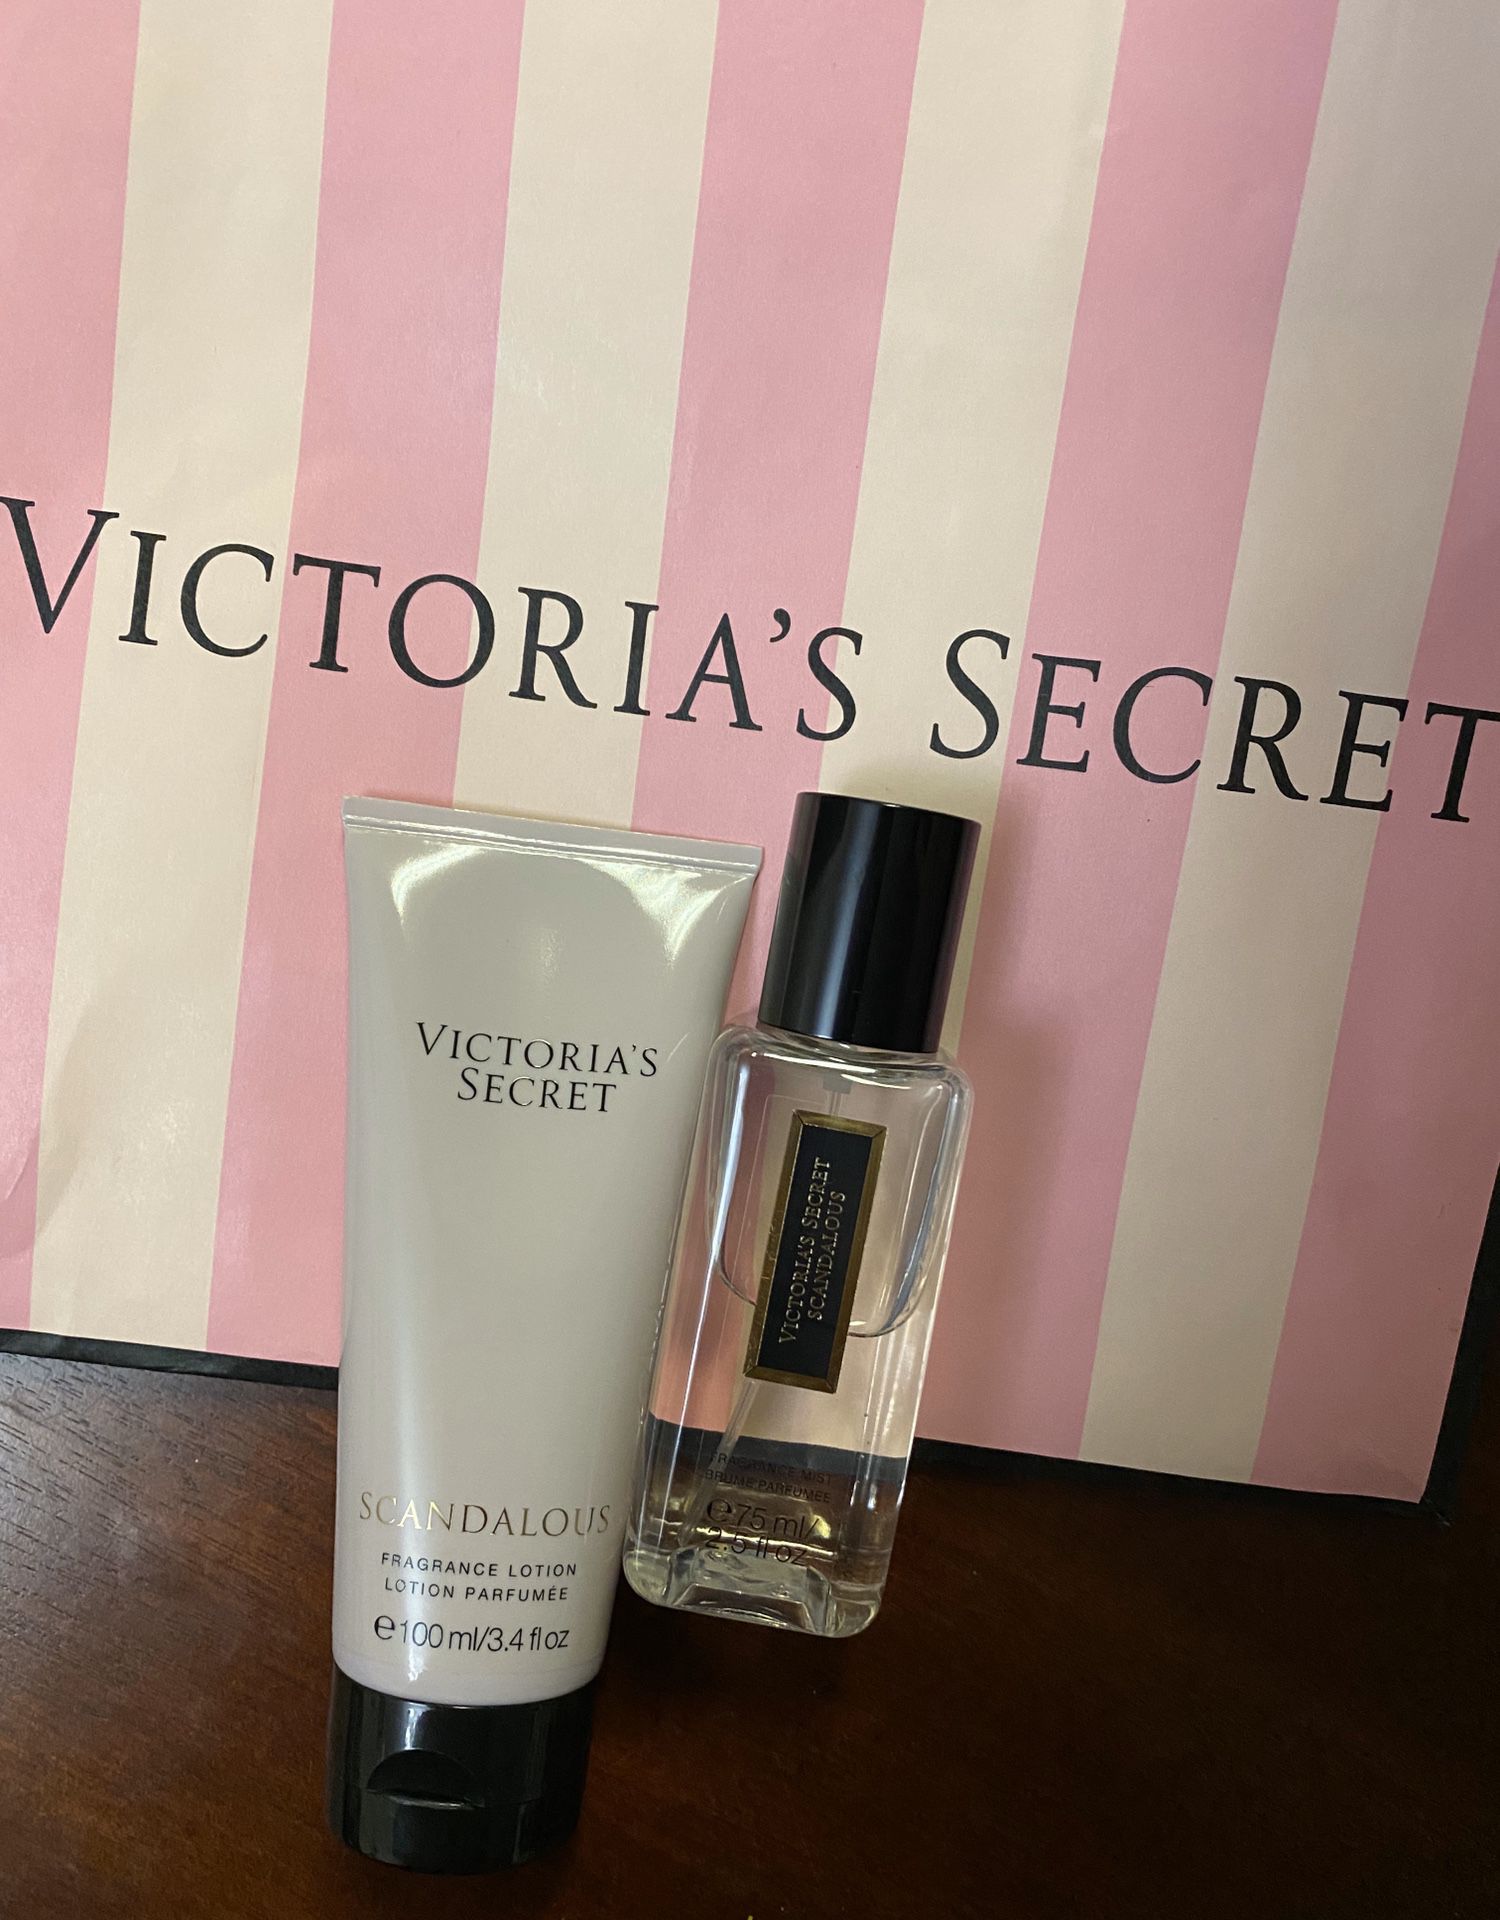 New Victoria’s Secret scandalous set